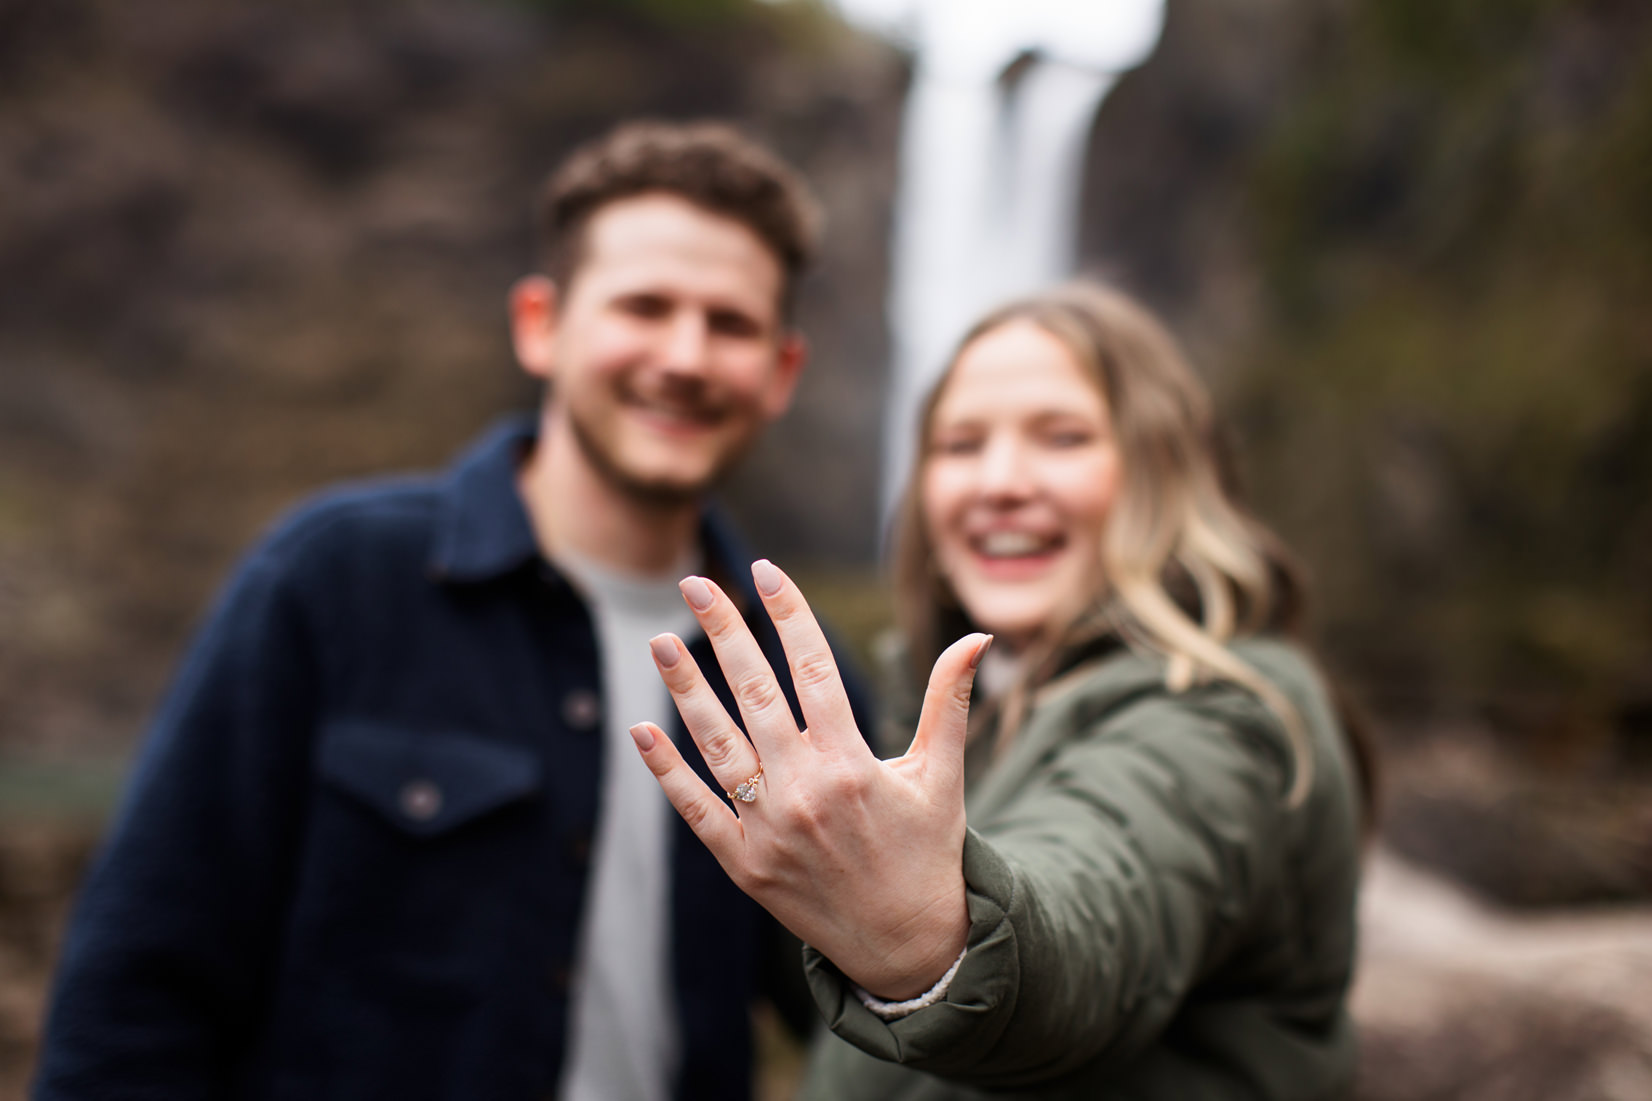 Snoqualmie Falls Surprise Proposal